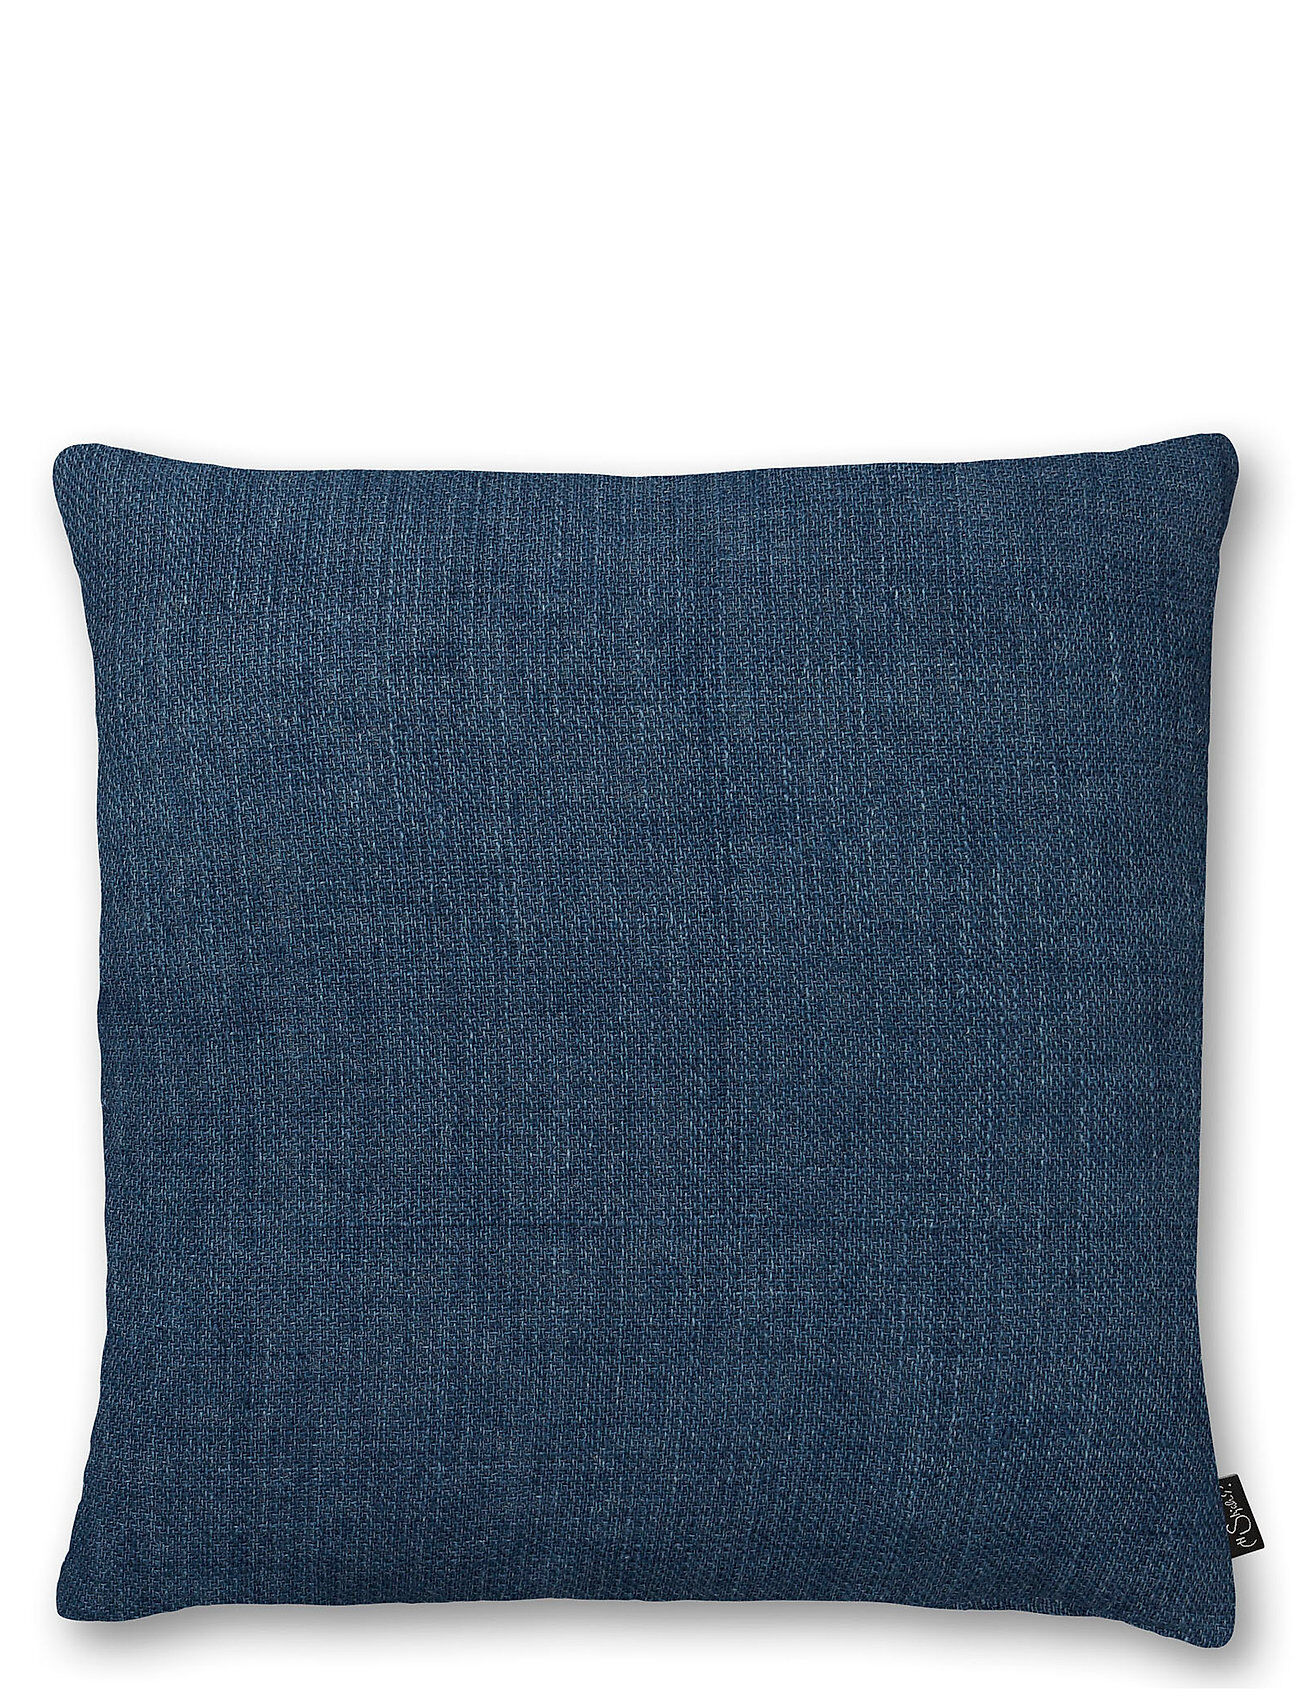 H. Skjalm P. Frey Cushion Cover Home Textiles Cushions & Blankets Cushion Covers Blå H. Skjalm P.